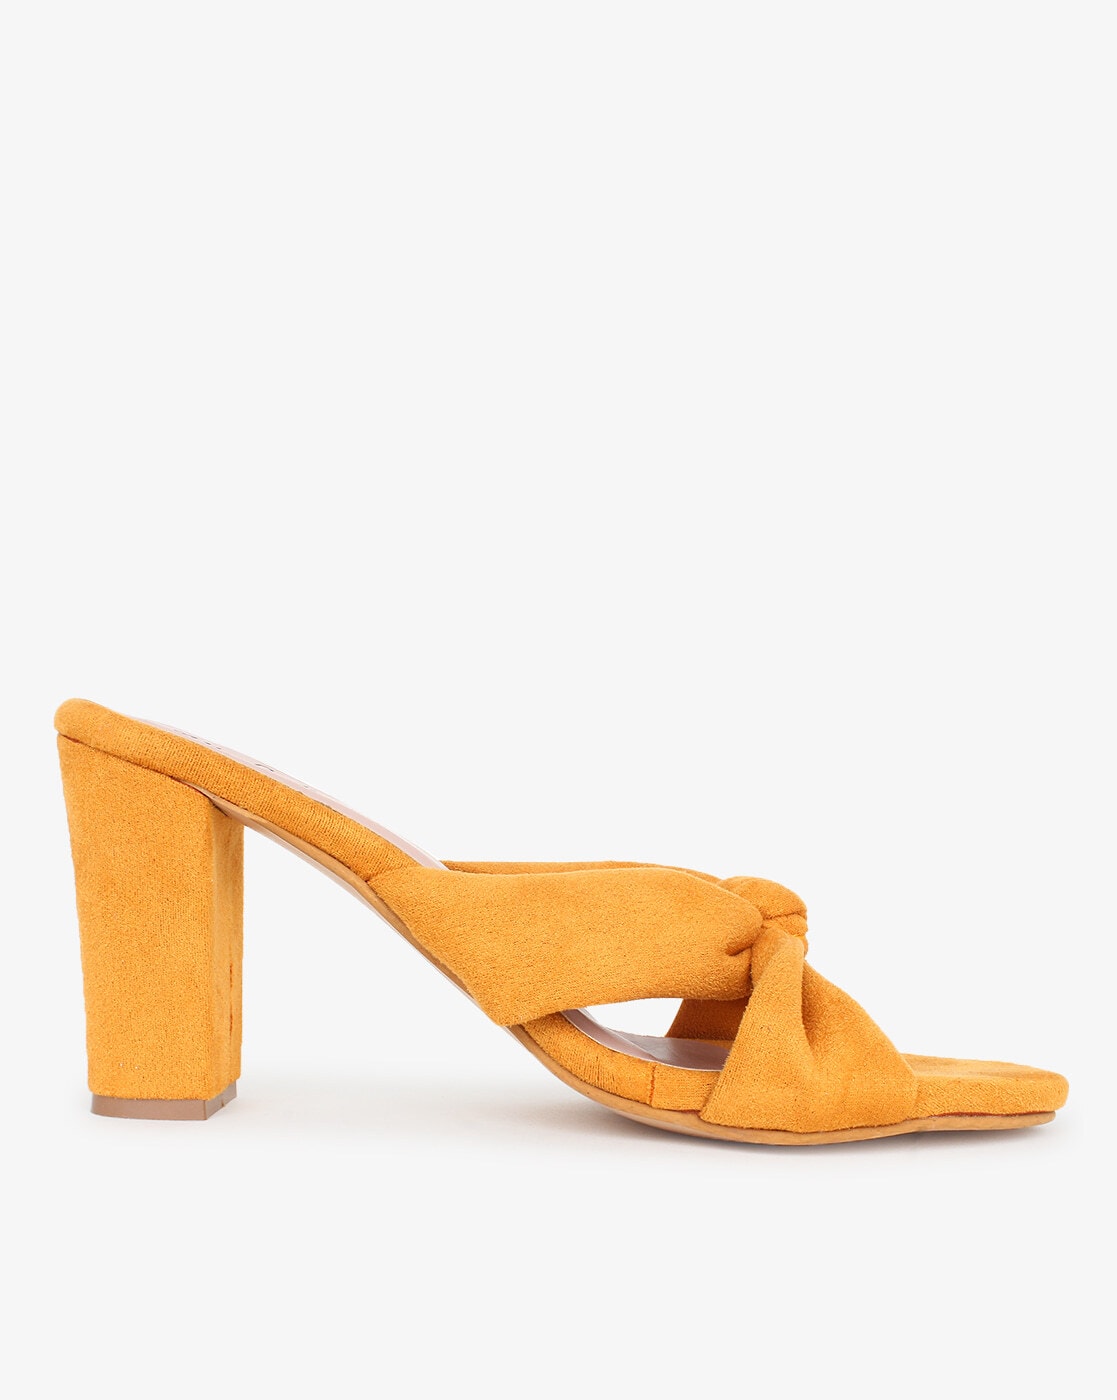 Buy Catwalk Croc Print Yellow Heels Online